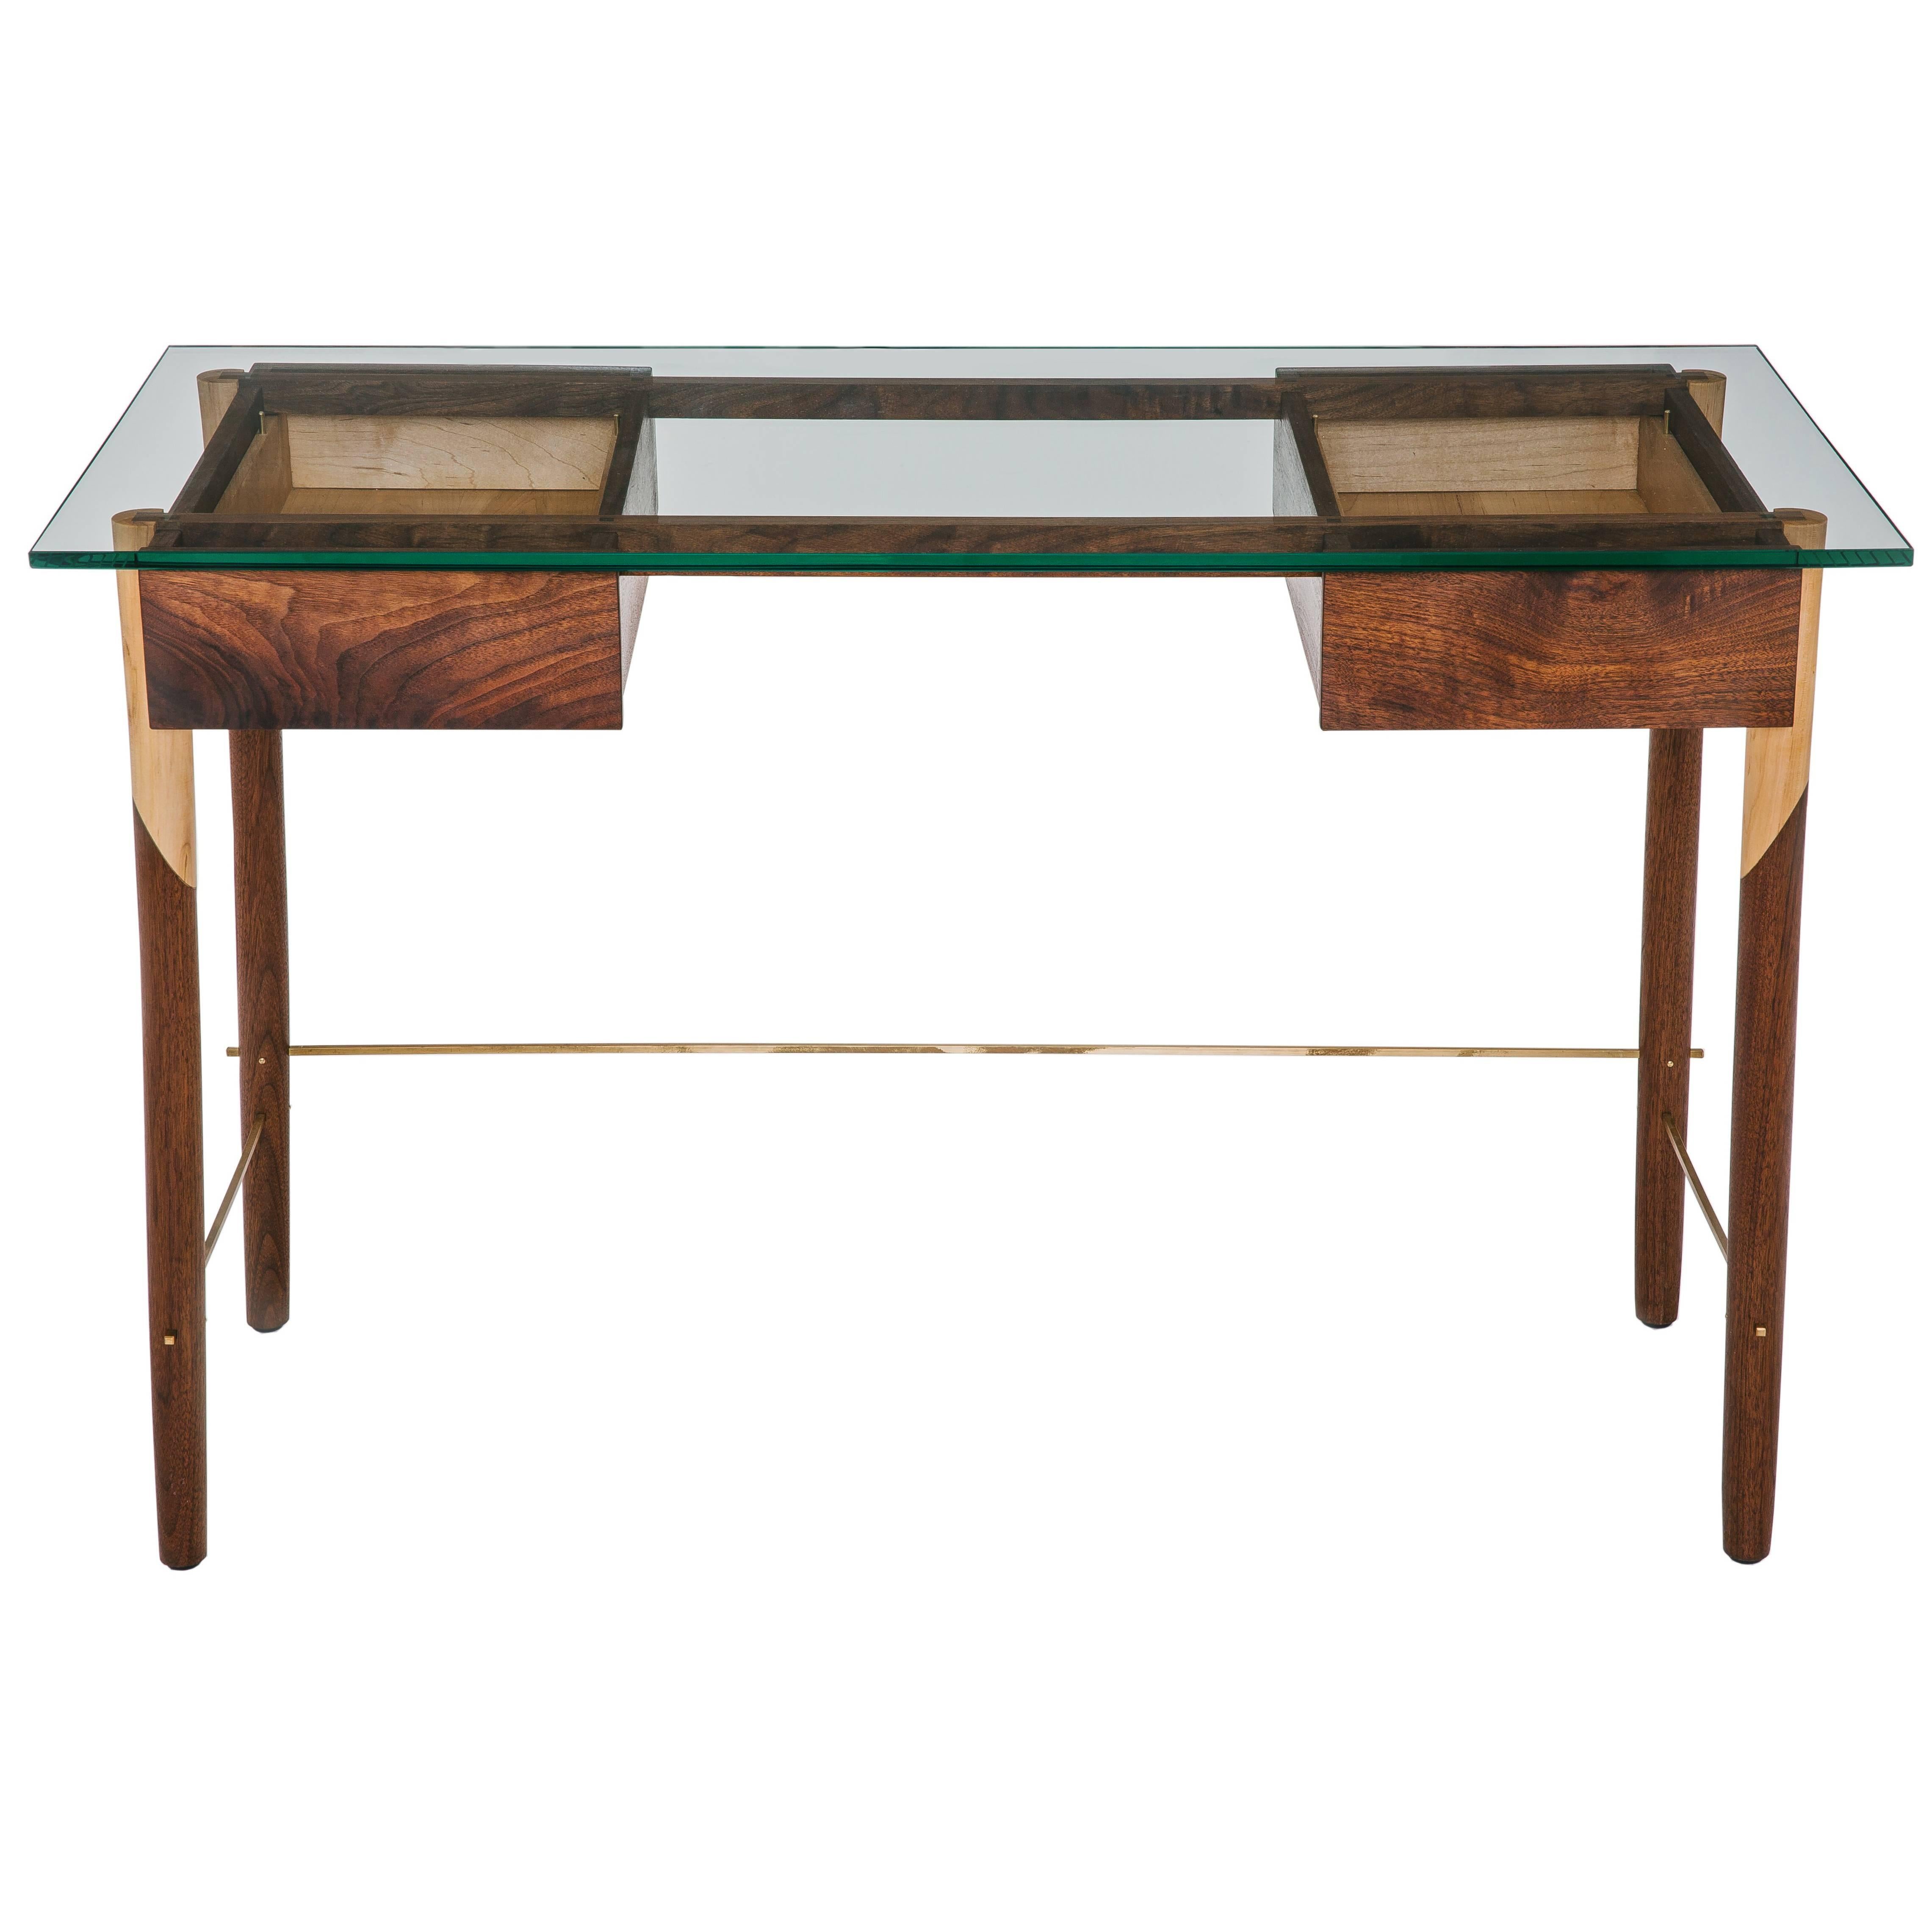 Schreibtisch mit Platte aus Nussbaum, Ahorn, Messing und Glas